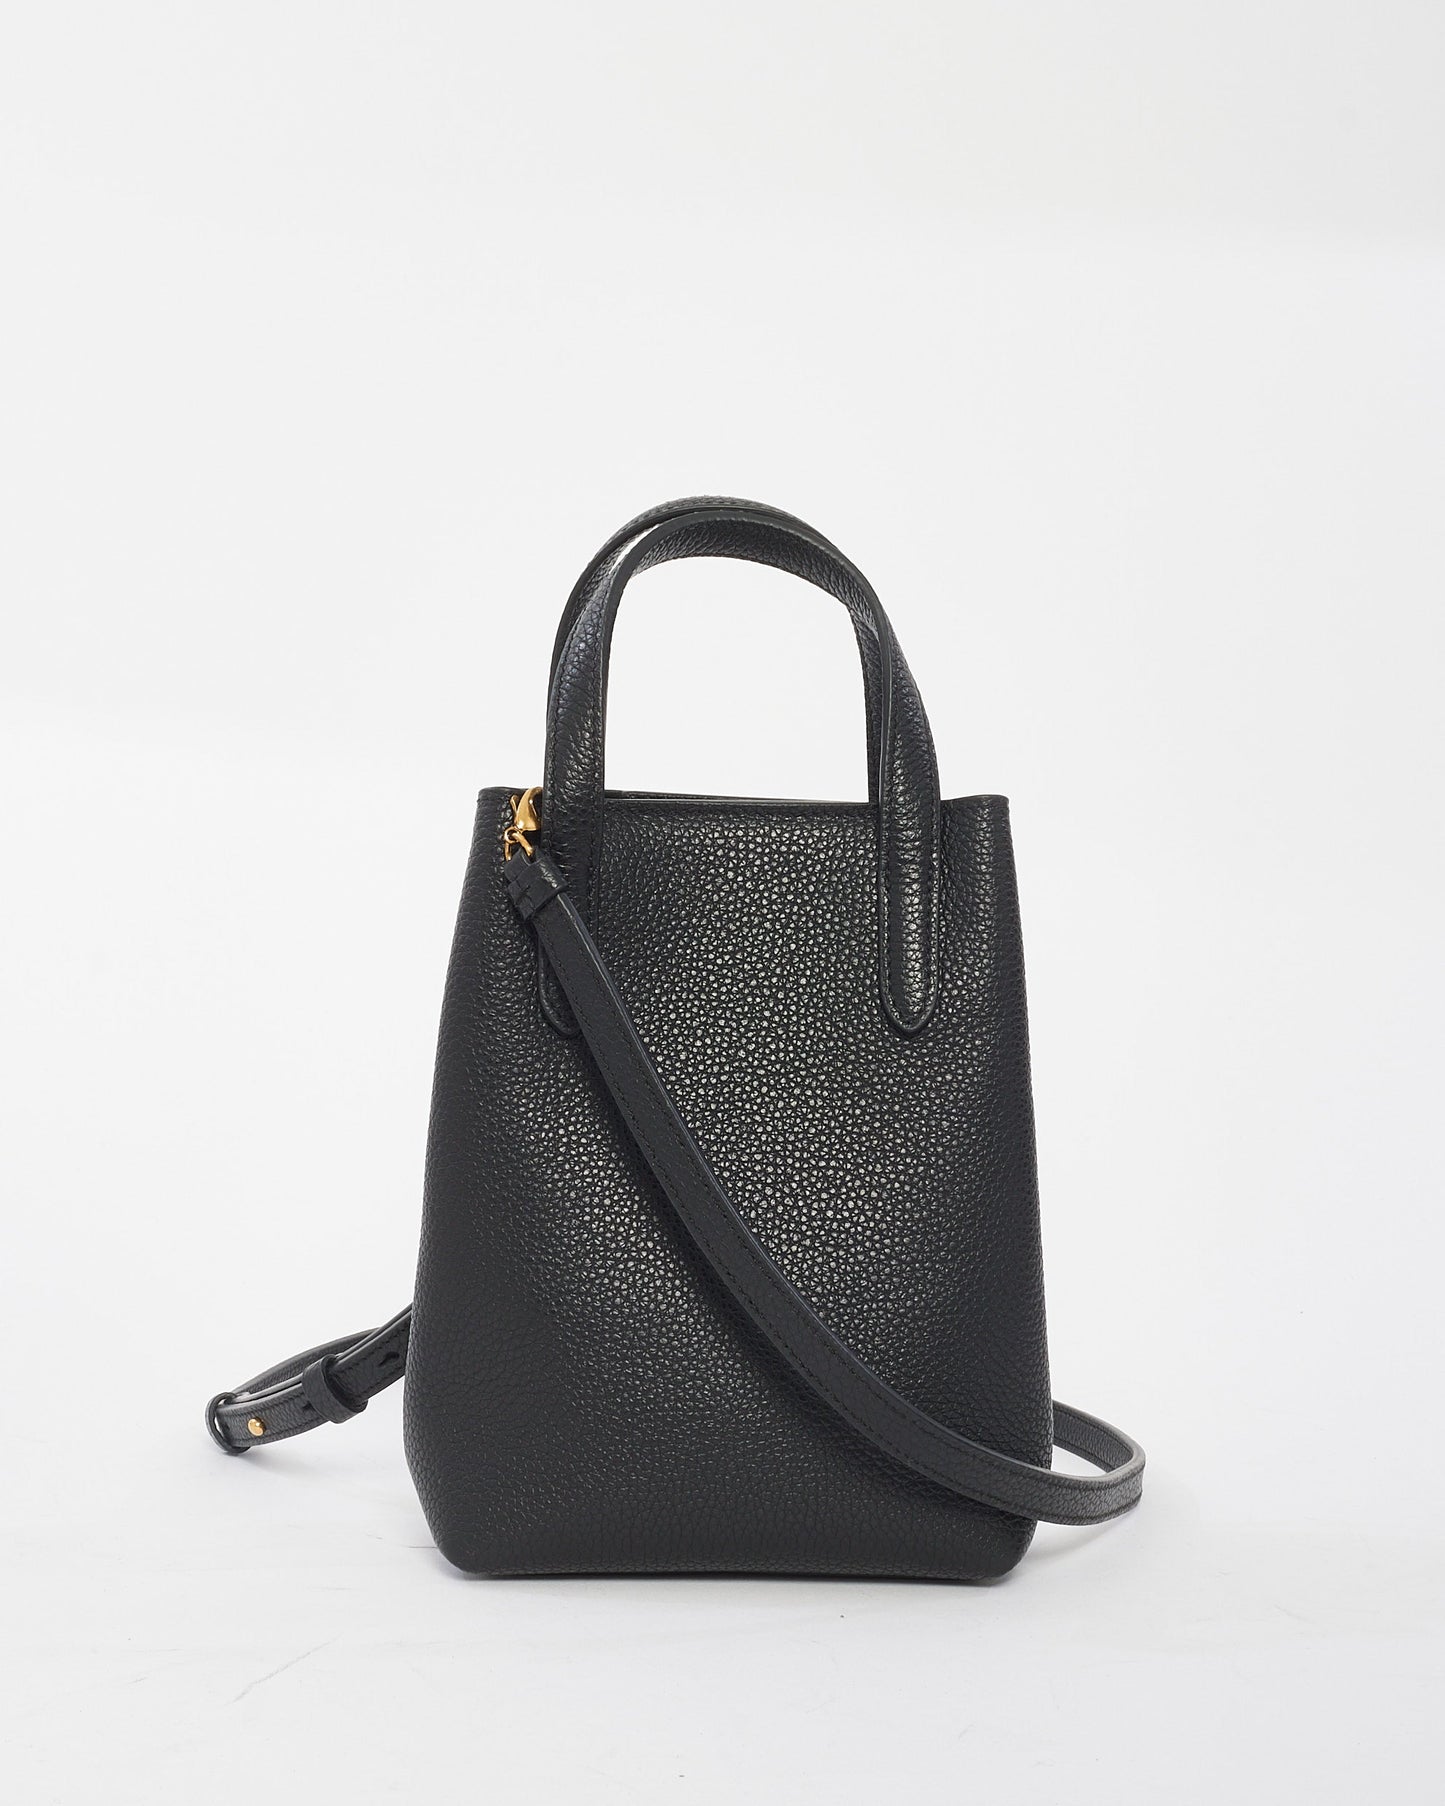 Salvatore Ferragamo Black Leather Mini Grancini Crossbody Bag